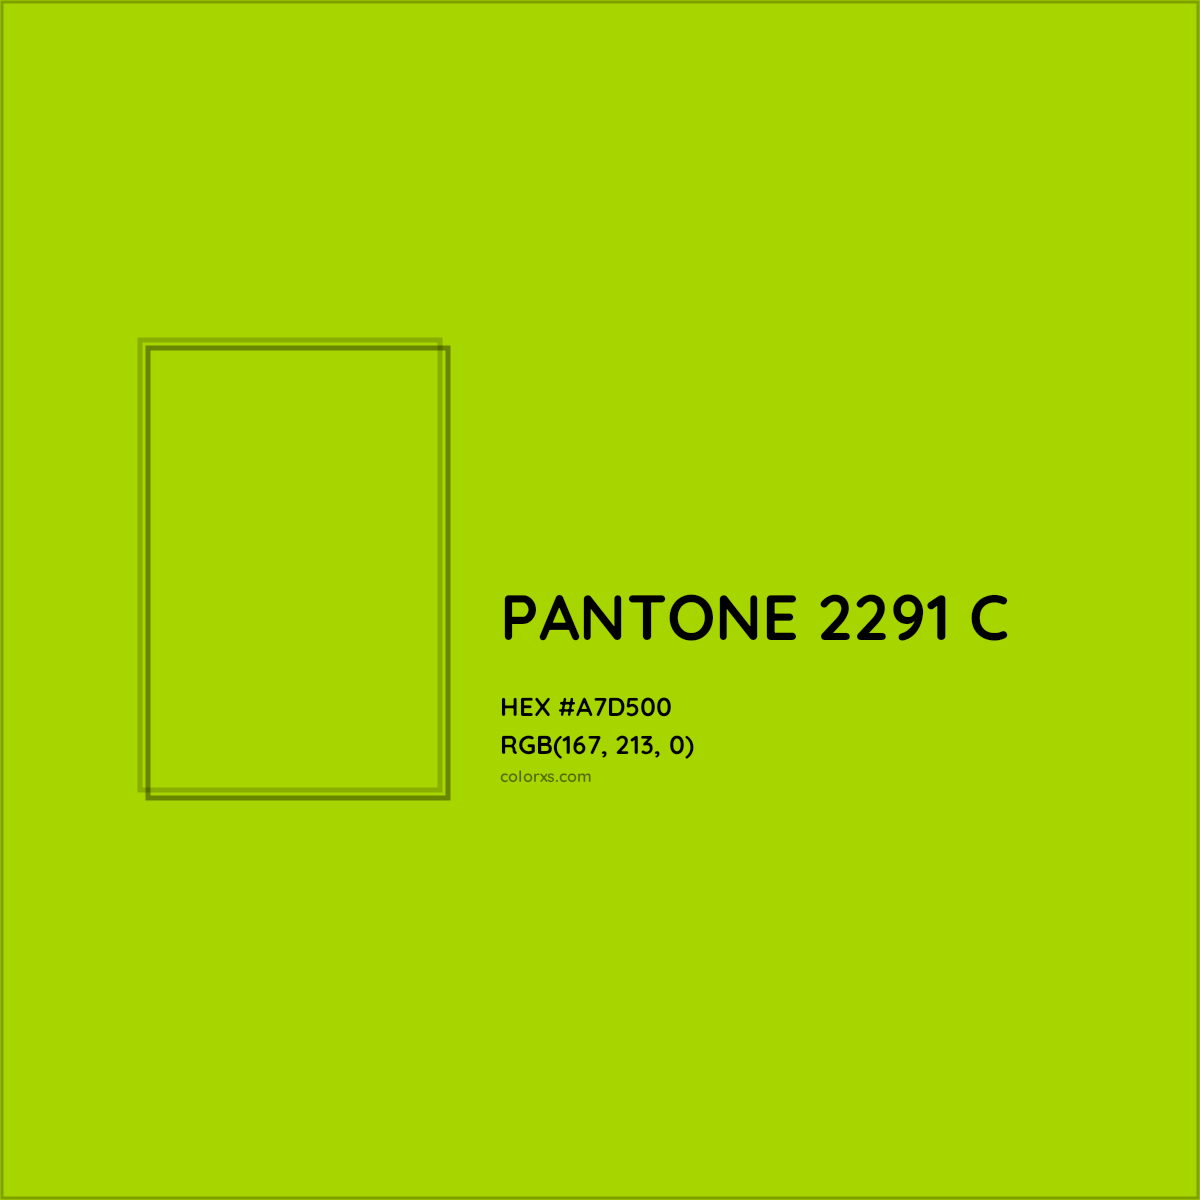 HEX #A7D500 PANTONE 2291 C CMS Pantone PMS - Color Code